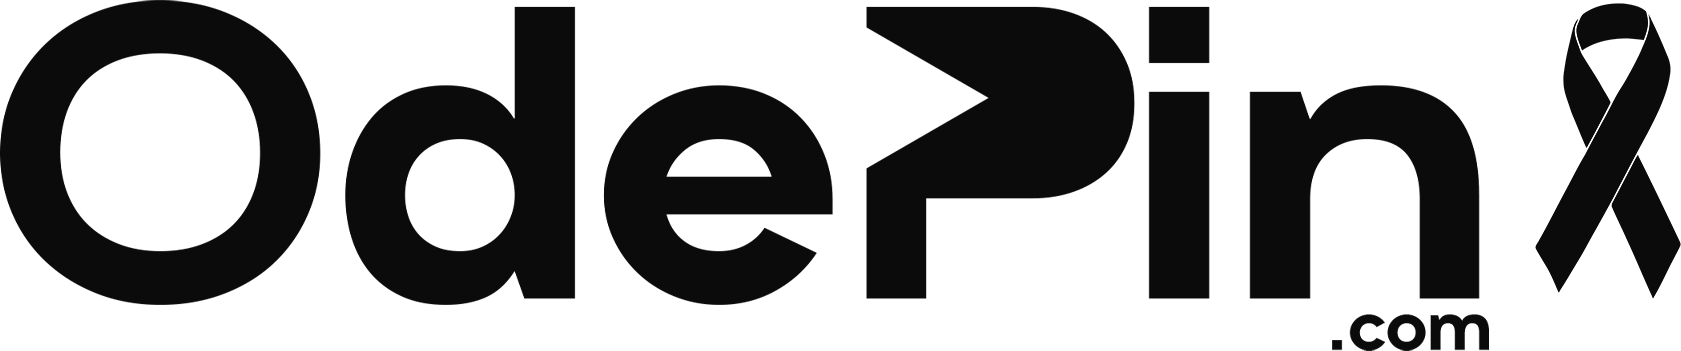 Ödepin.com logo